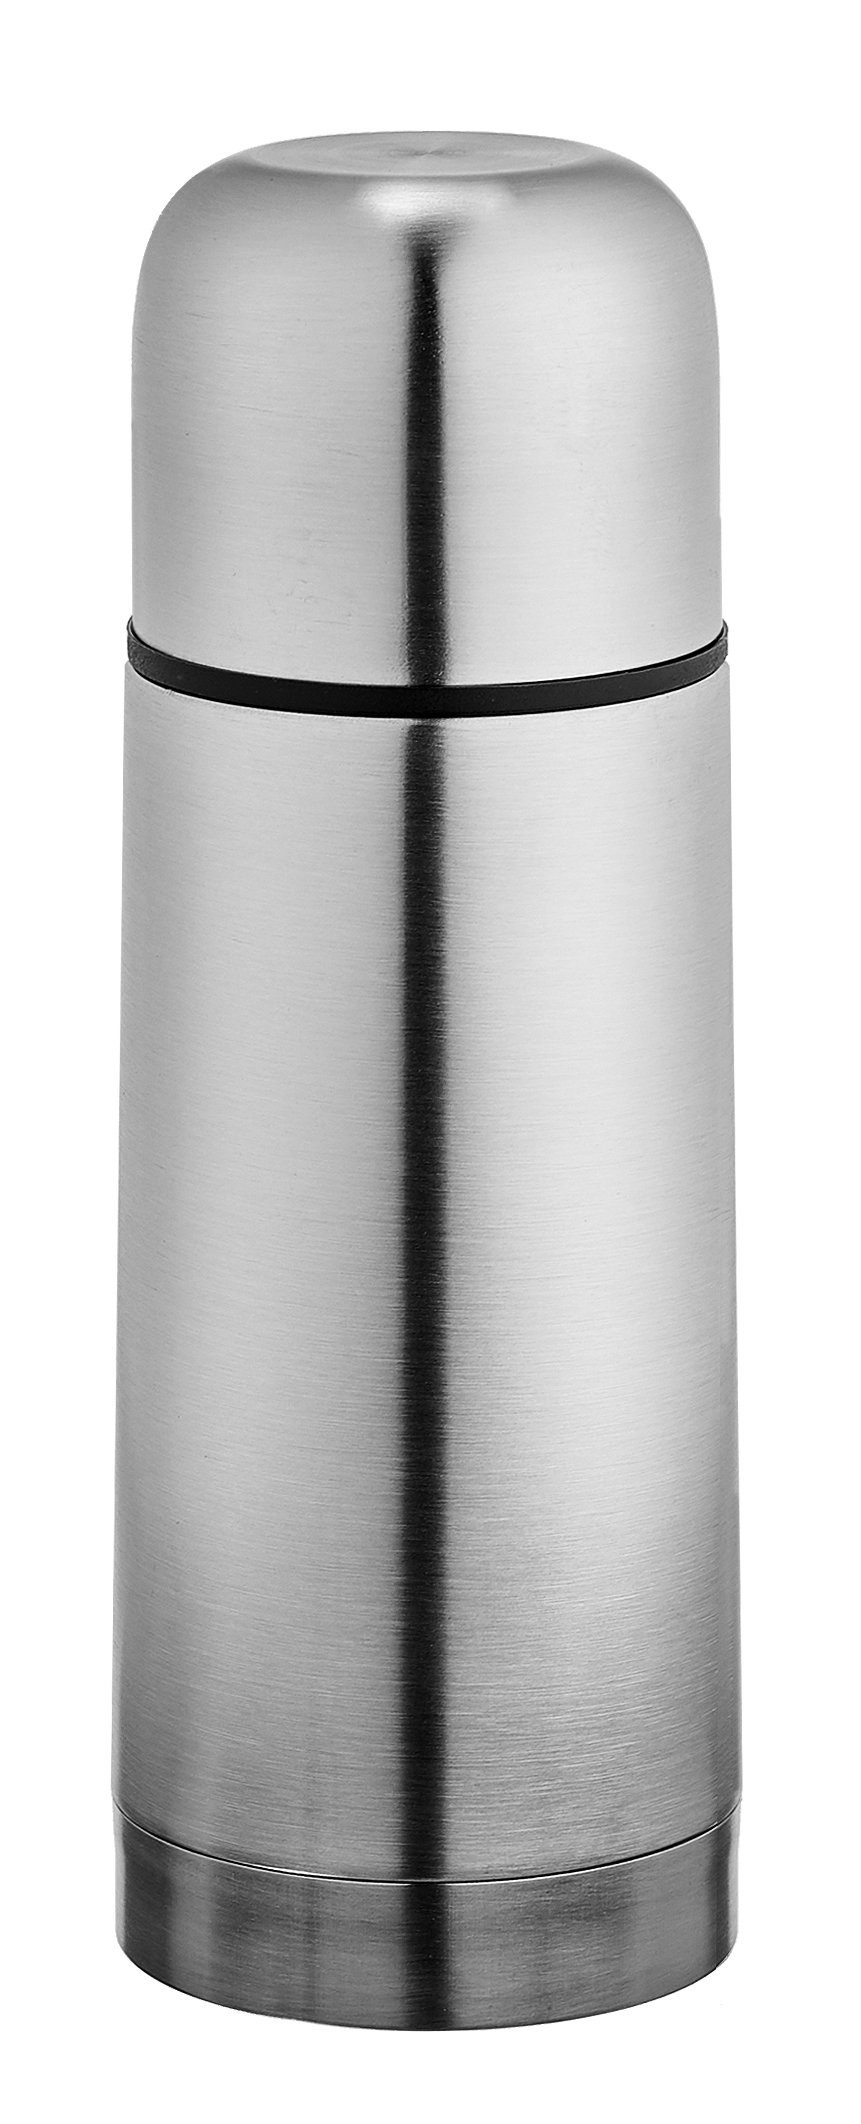 Goldhofer Thermoflasche Edelstahl: Thermoskanne-Flasche für heiße und kalte Getränke, Edestahl, Vaccum Technik, ein Knopf Verschluss